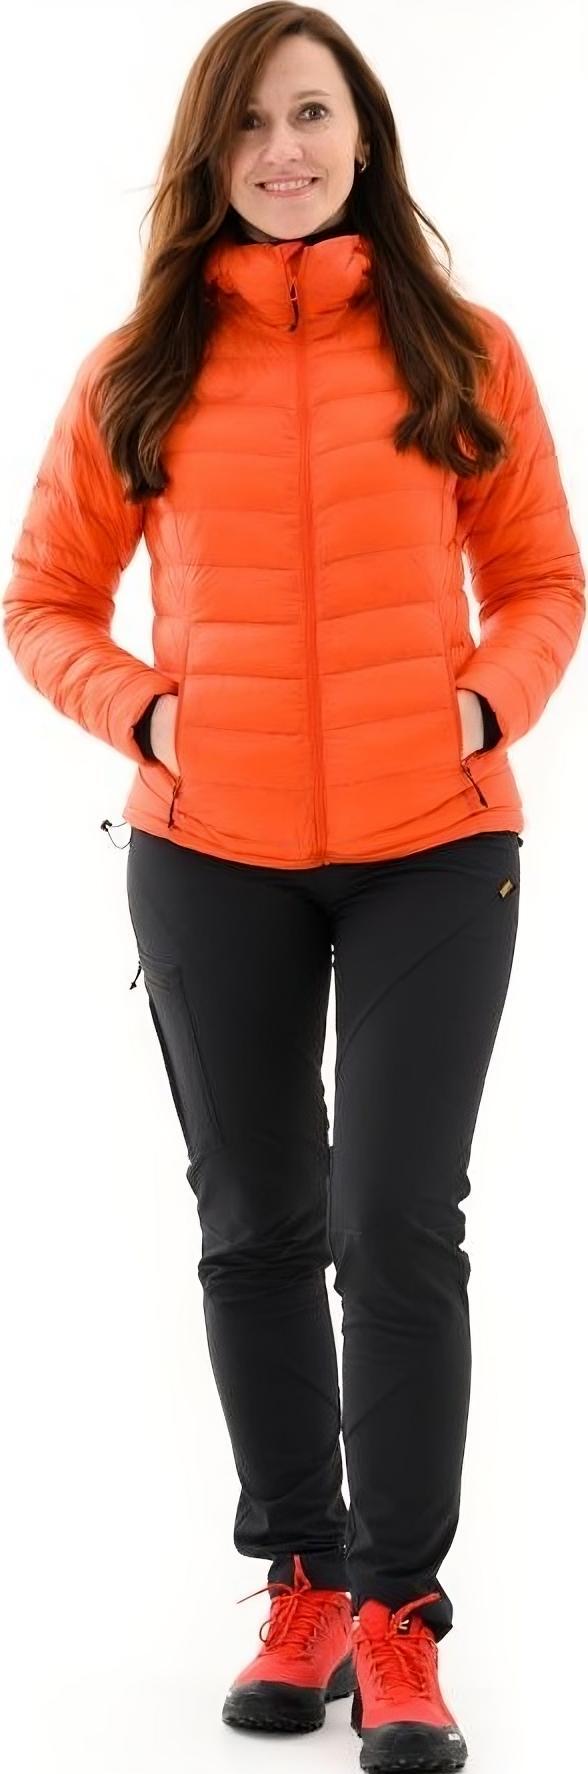 Куртка женская Turbat Trek Pro Wmn orange red XL красный фото 2